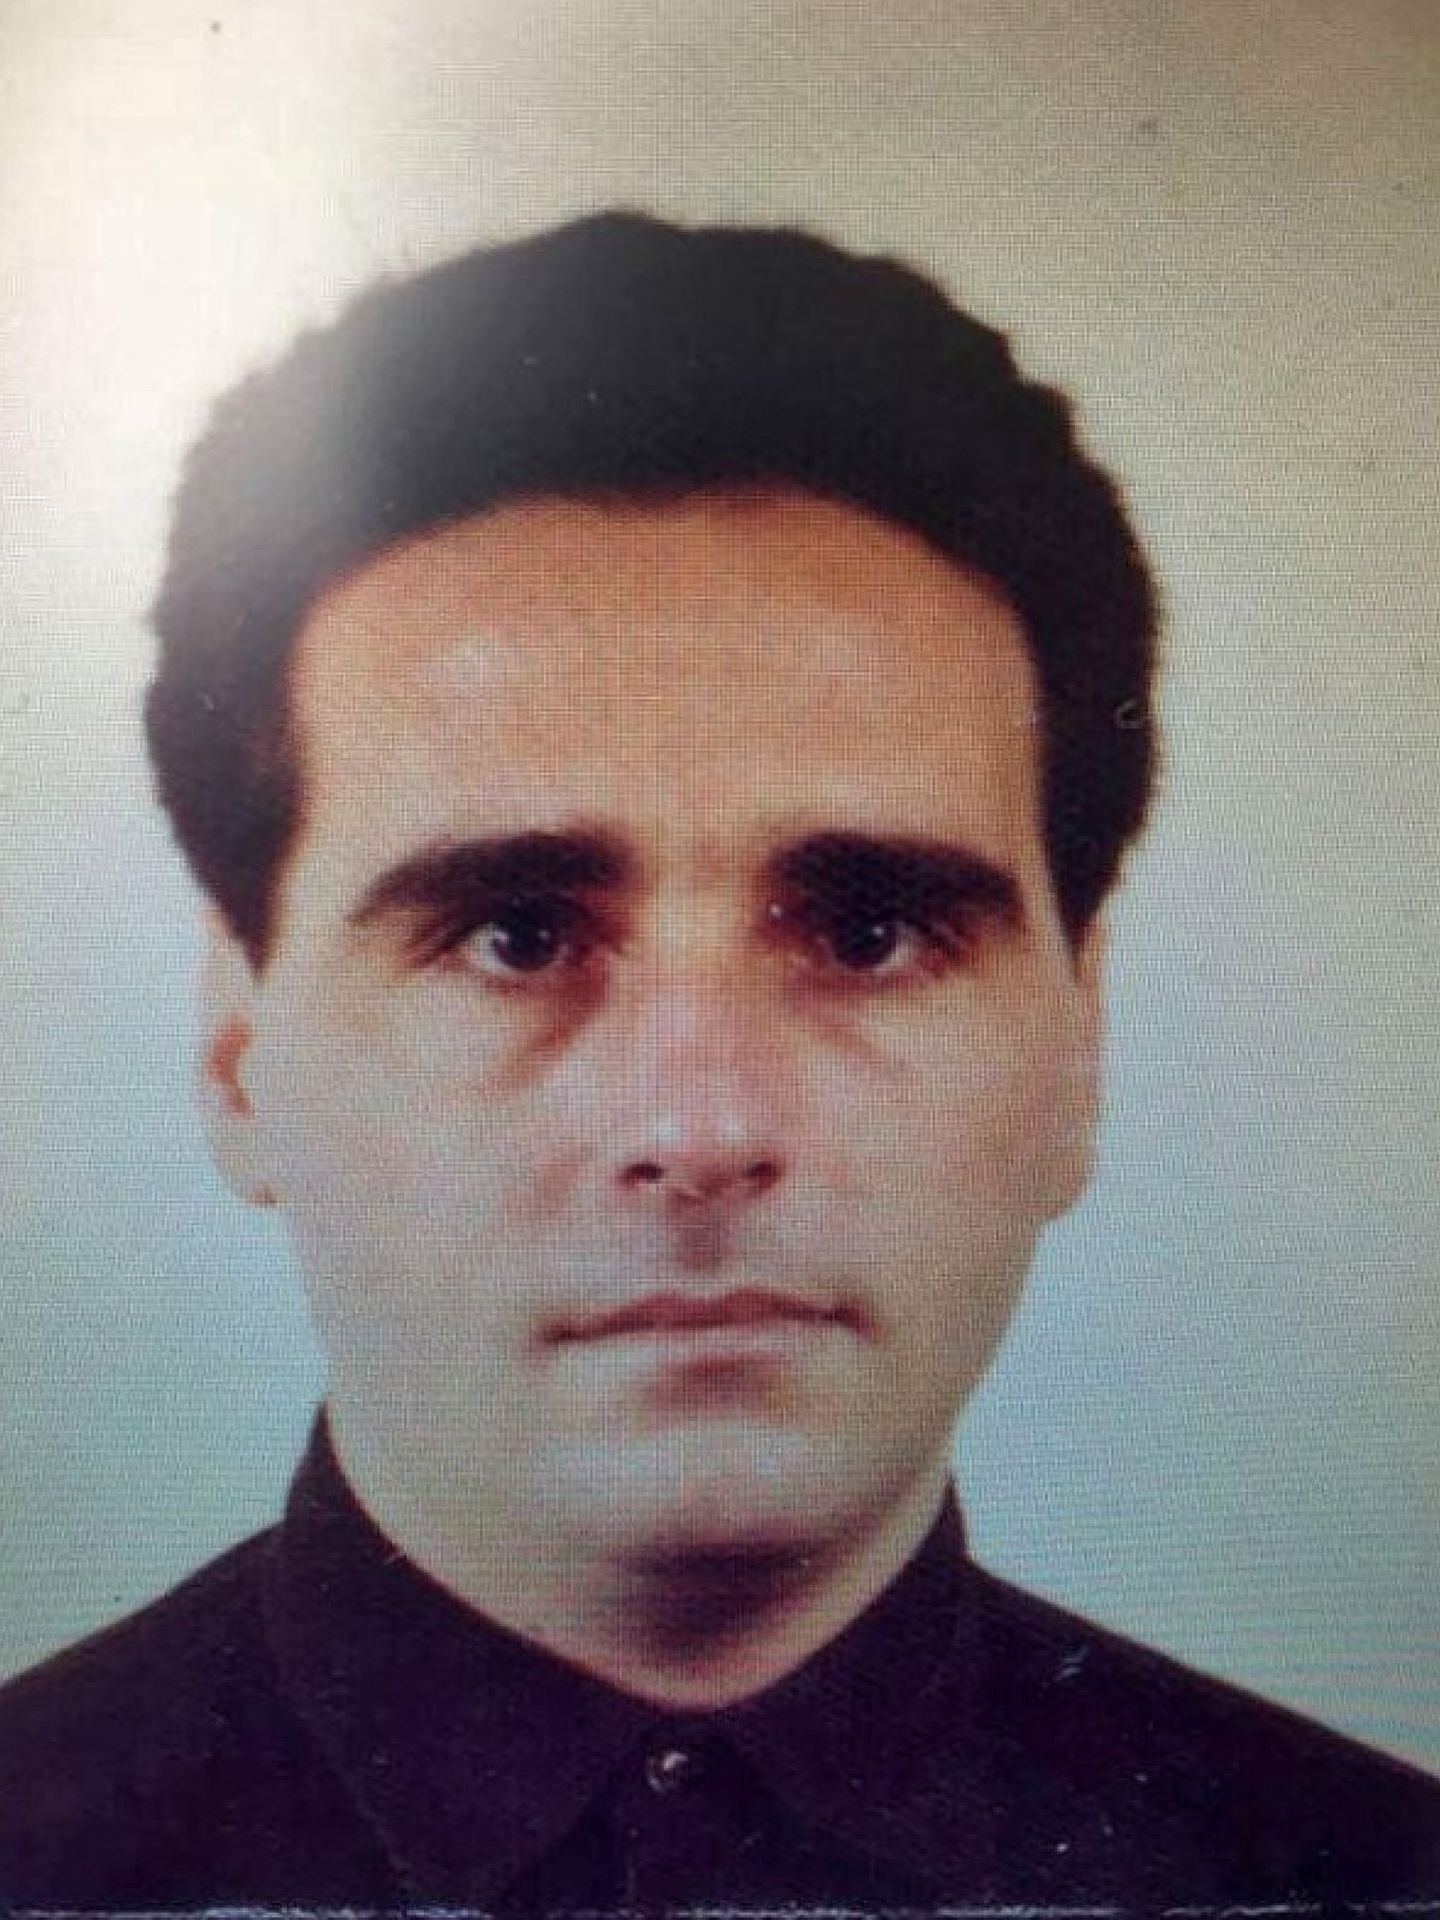 Imagen facilitada por la Policía italiana que muestra al jefe de 'Ndrangheta, la mafia calabresa, Rocco Morabito. (EFE)